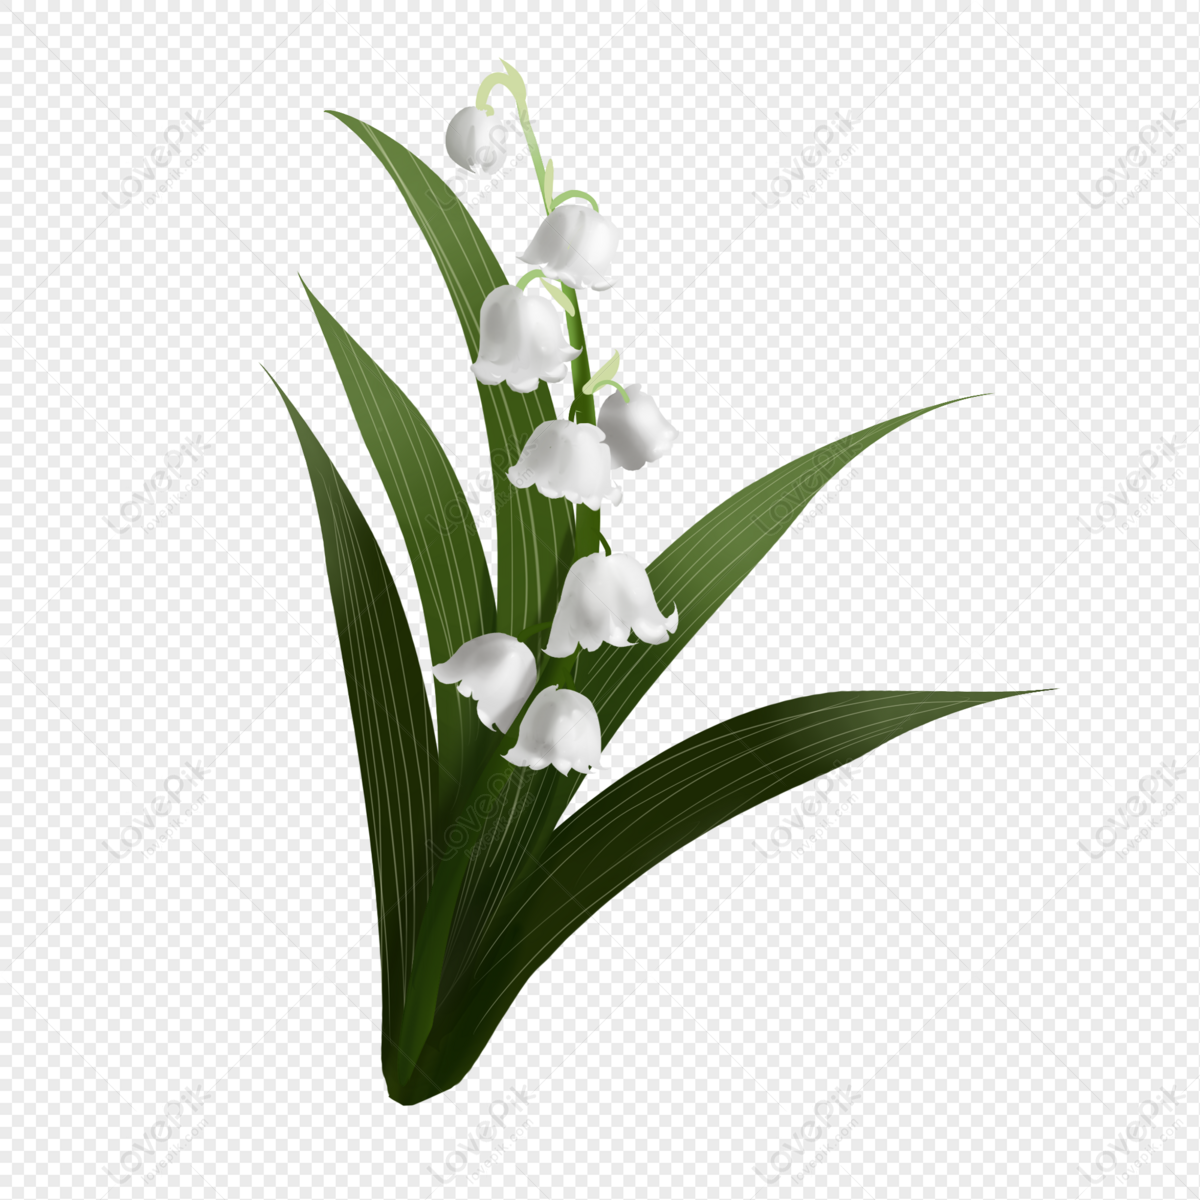 Tay Hoa Huệ là một loài hoa tinh tế và có mùi thơm dịu êm. Với những cánh hoa trắng tinh khôi và những đường viền mềm mại, tay hoa huệ là biểu tượng cho sự trong sáng và tinh khiết. Thưởng thức hình ảnh liên quan để cảm nhận được vẻ đẹp của loài hoa này.